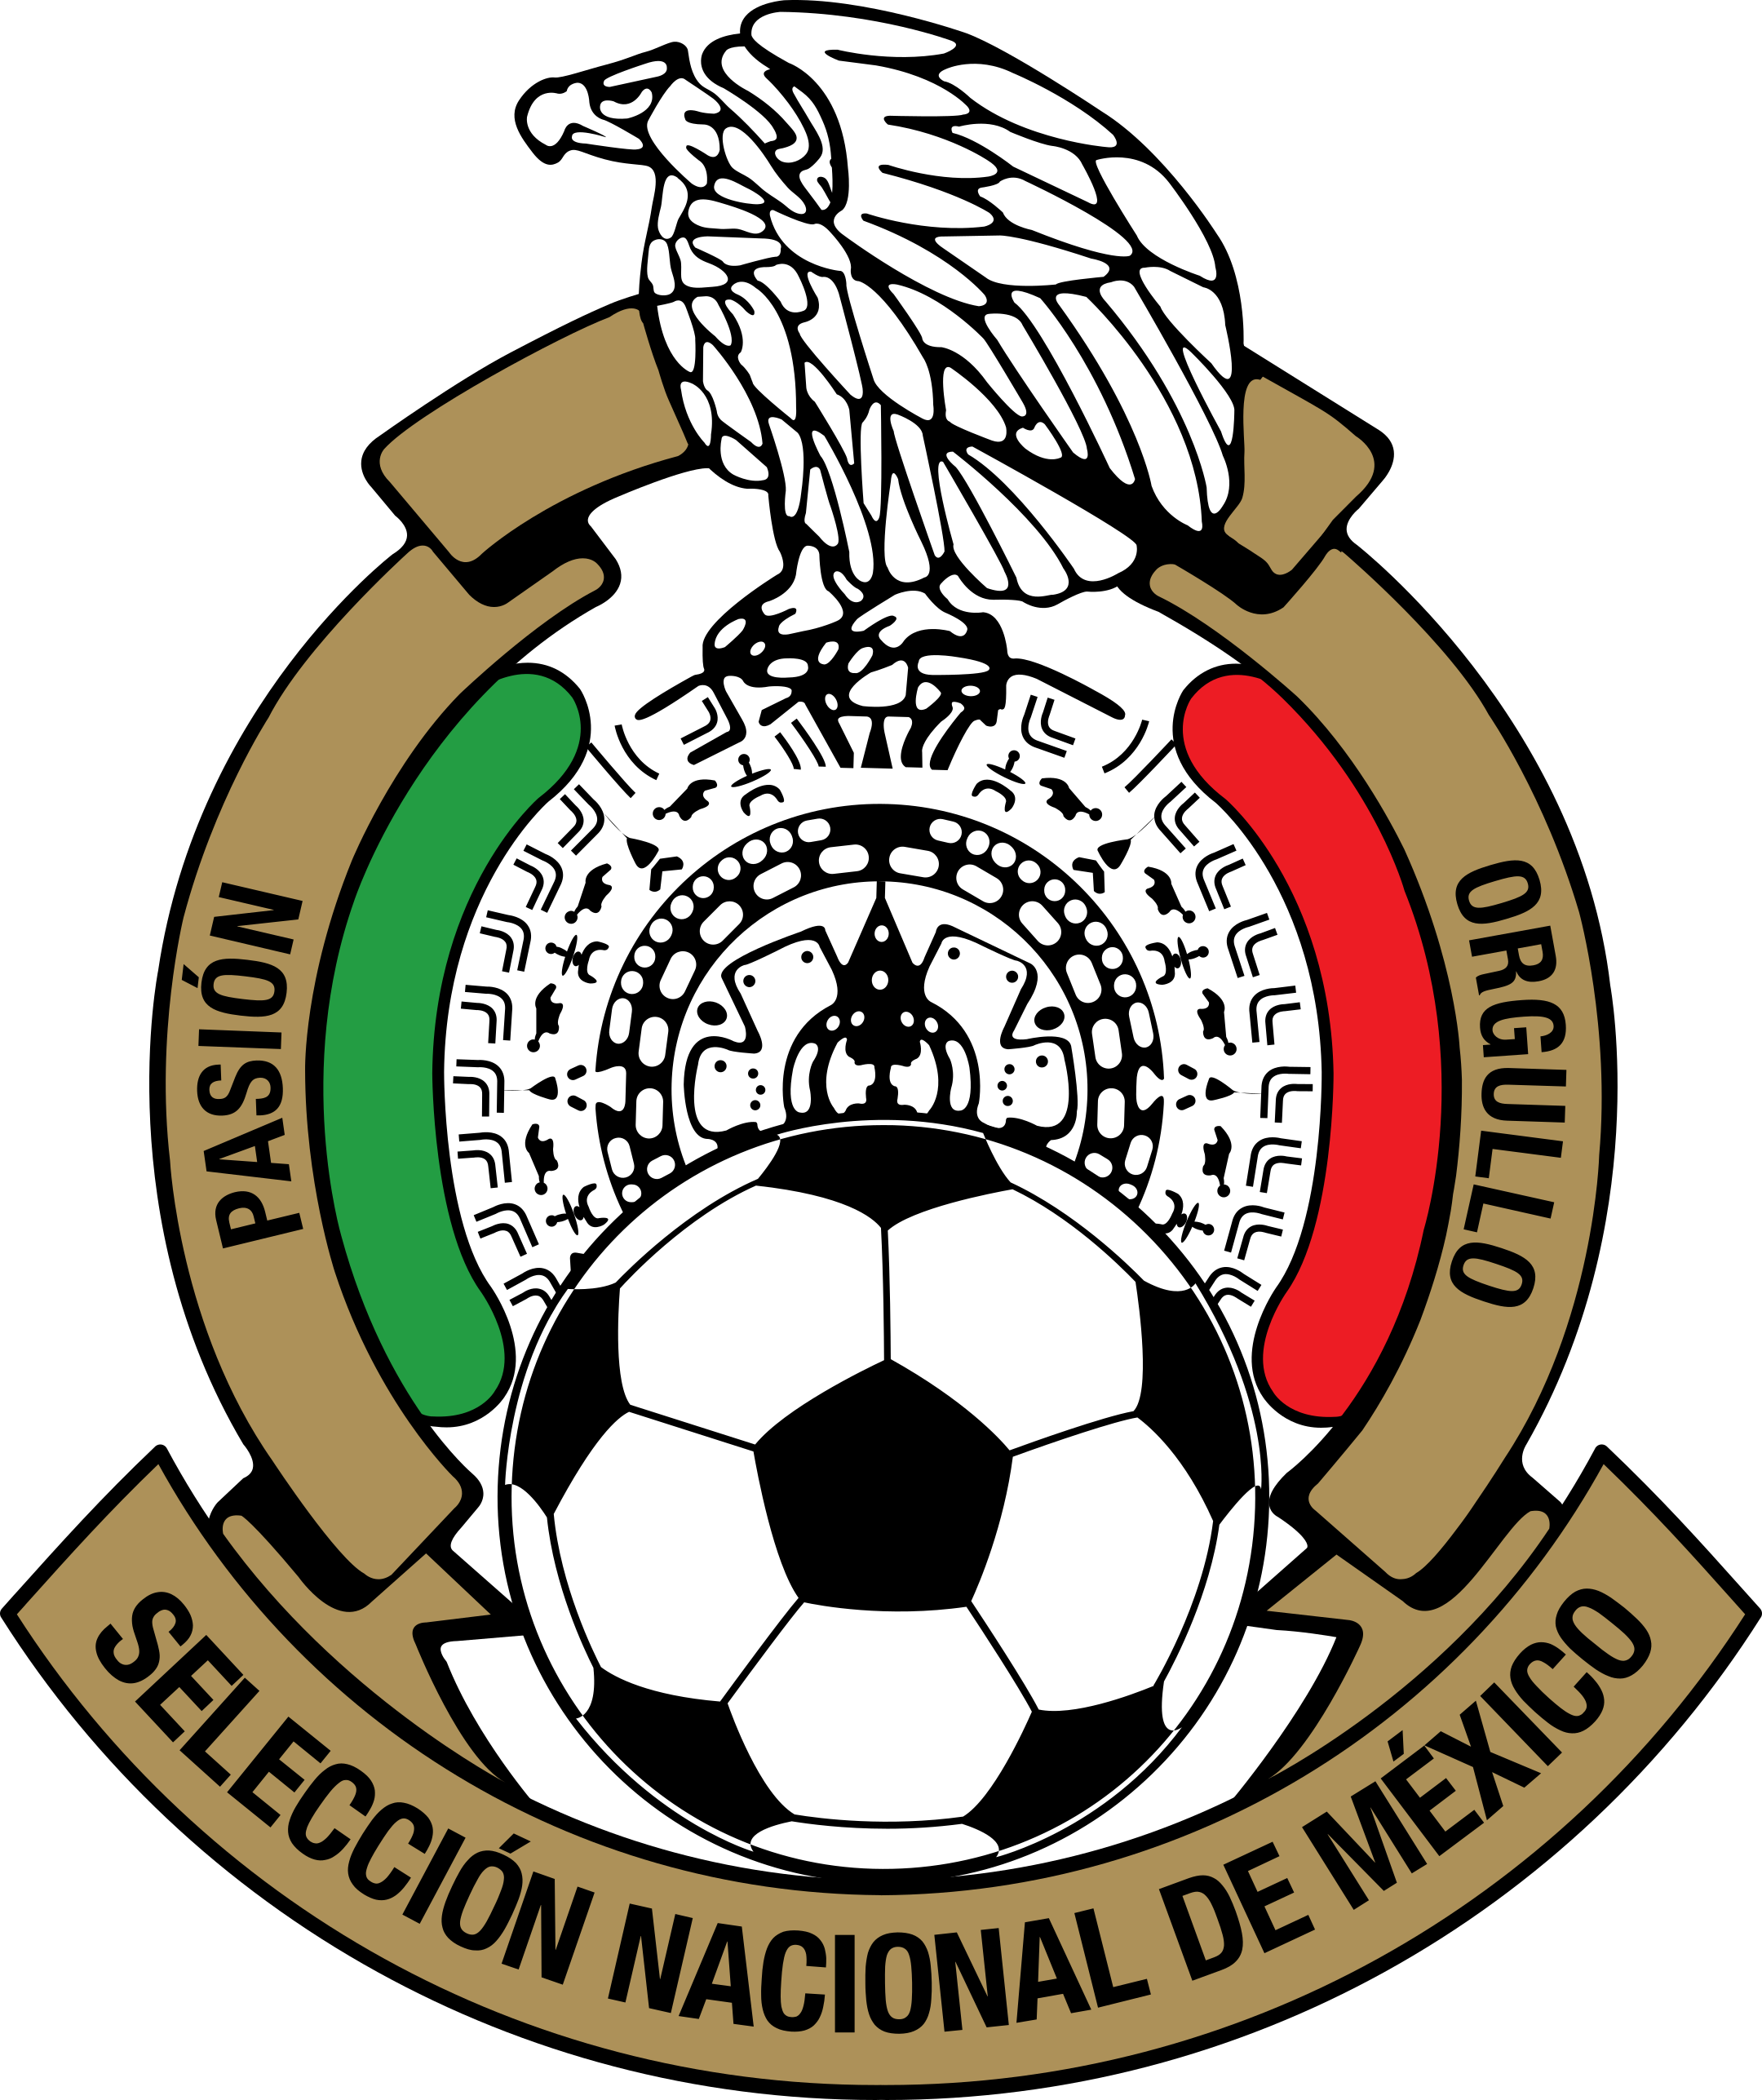 fmf seleccion de mexico logo 1 - FMF – Selección de Fútbol de México Logo